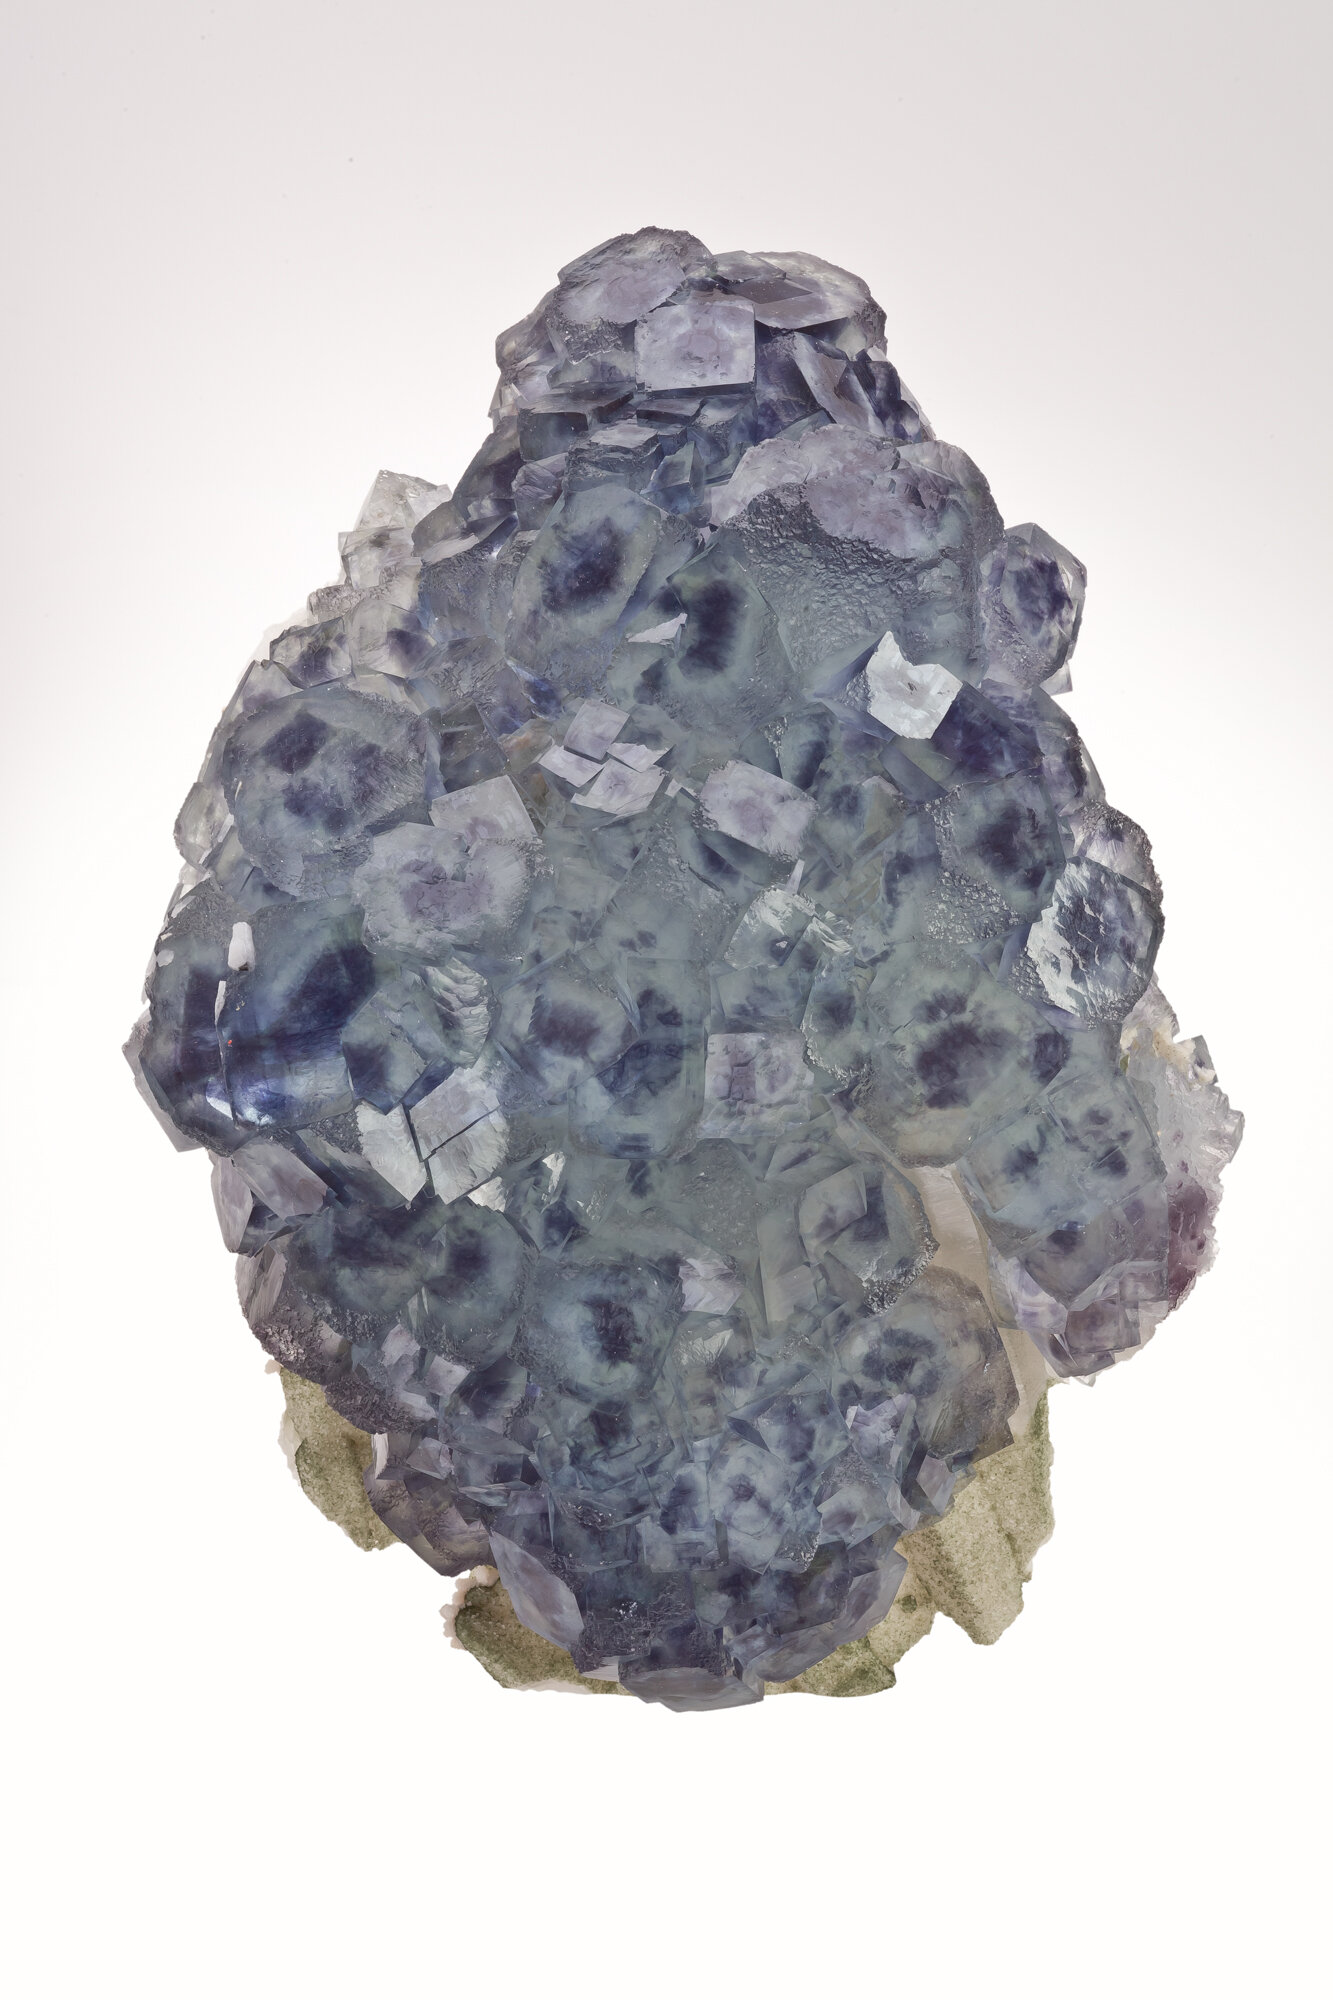  Fluorite, Yaogangxian mine, Yizhang co., Chenzhou pref., Hunan prov., China - 24cm 